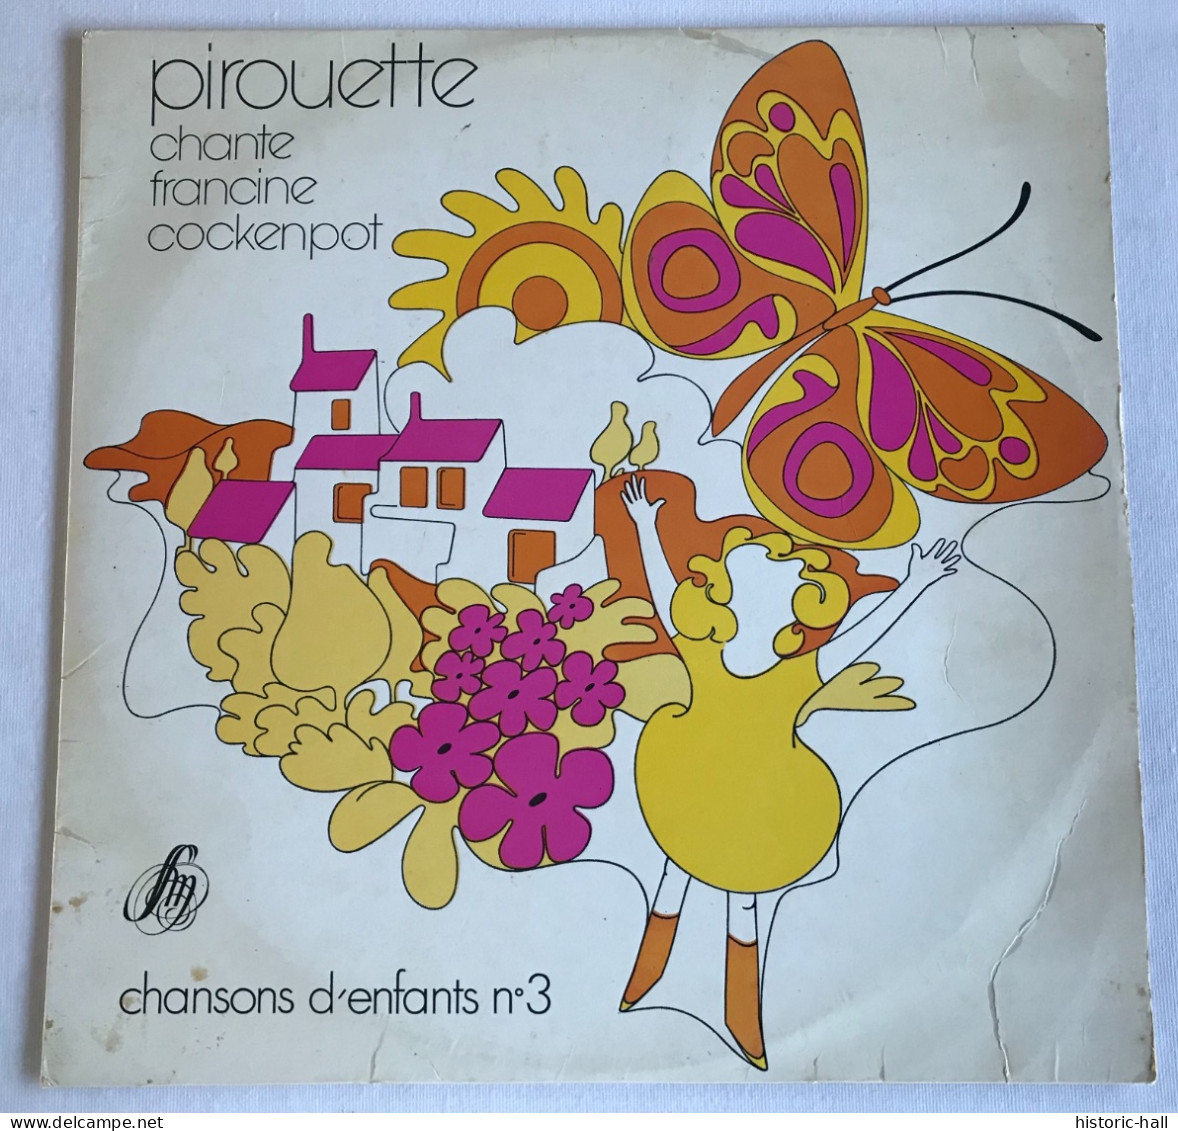 PIROUETTE - Chante Francine Cockenpot - LP - 1972 - French Press - Enfants